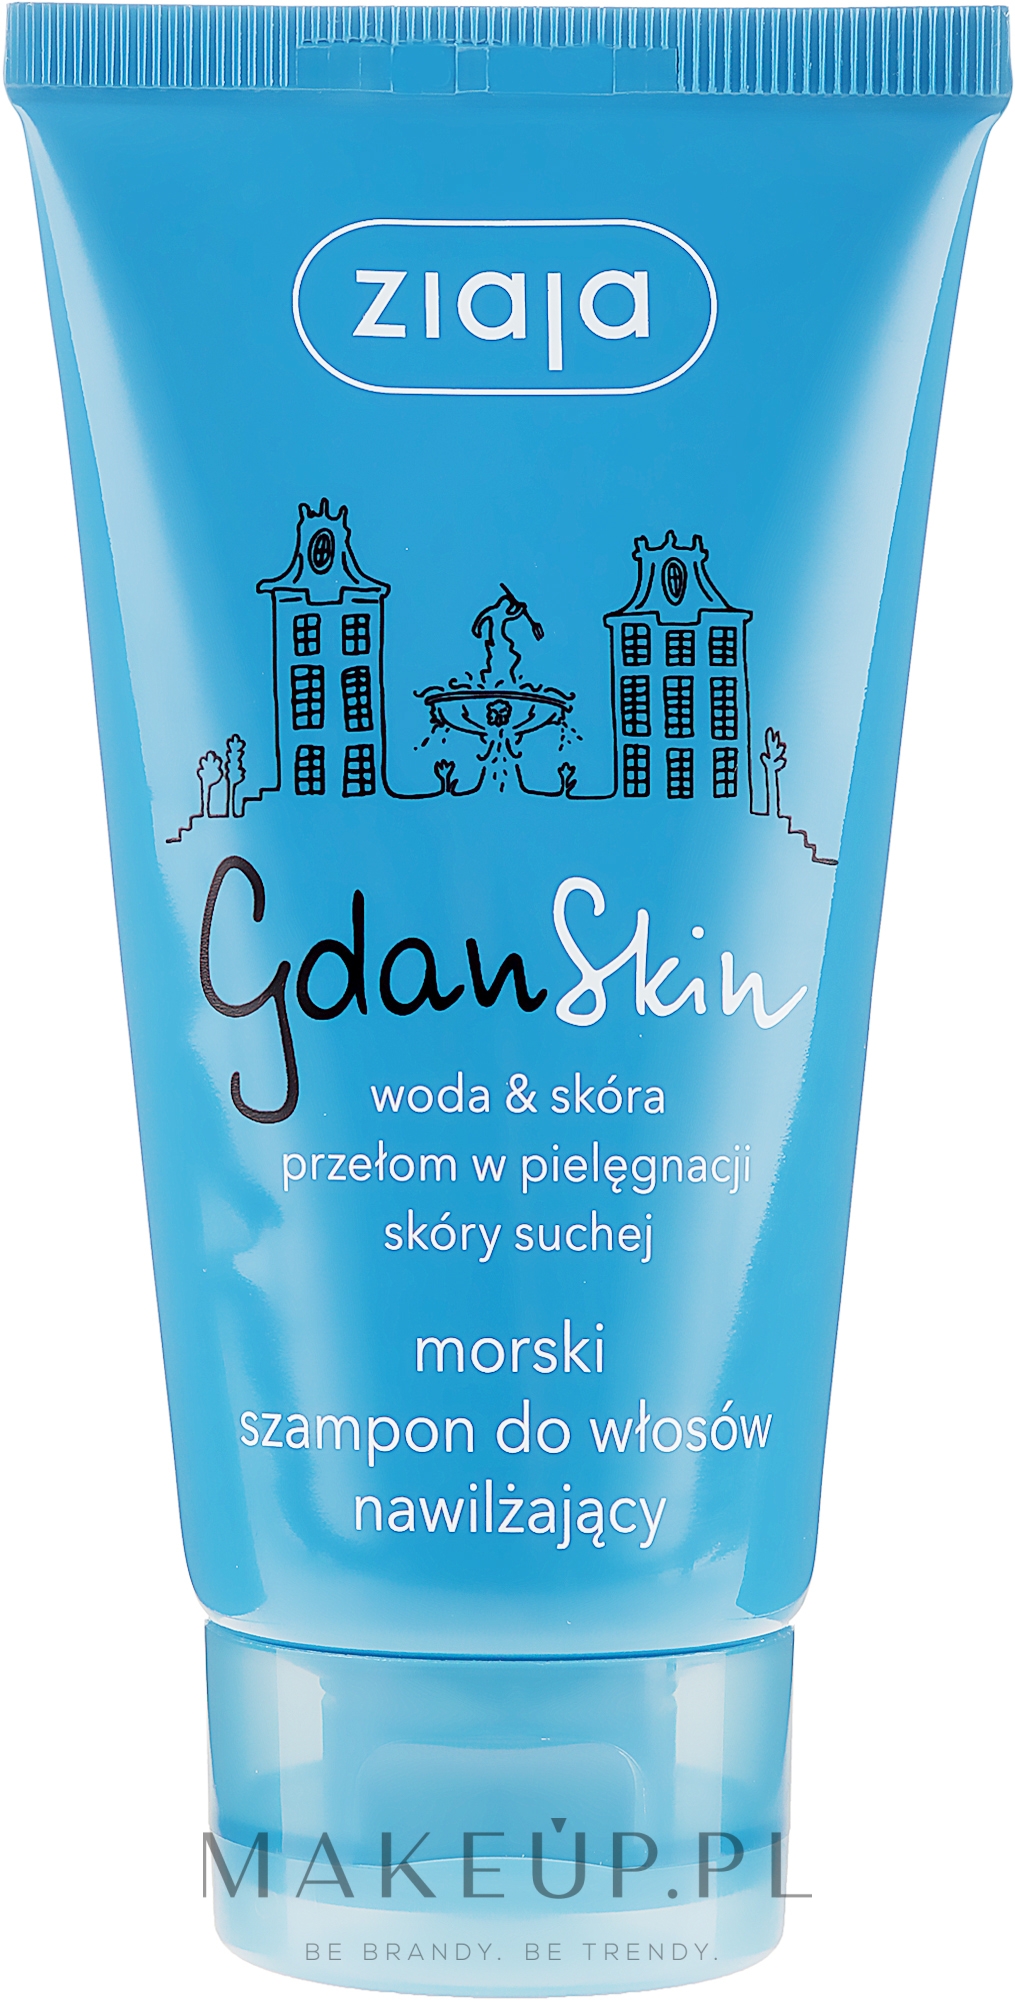 wizaz gdanskin szampon